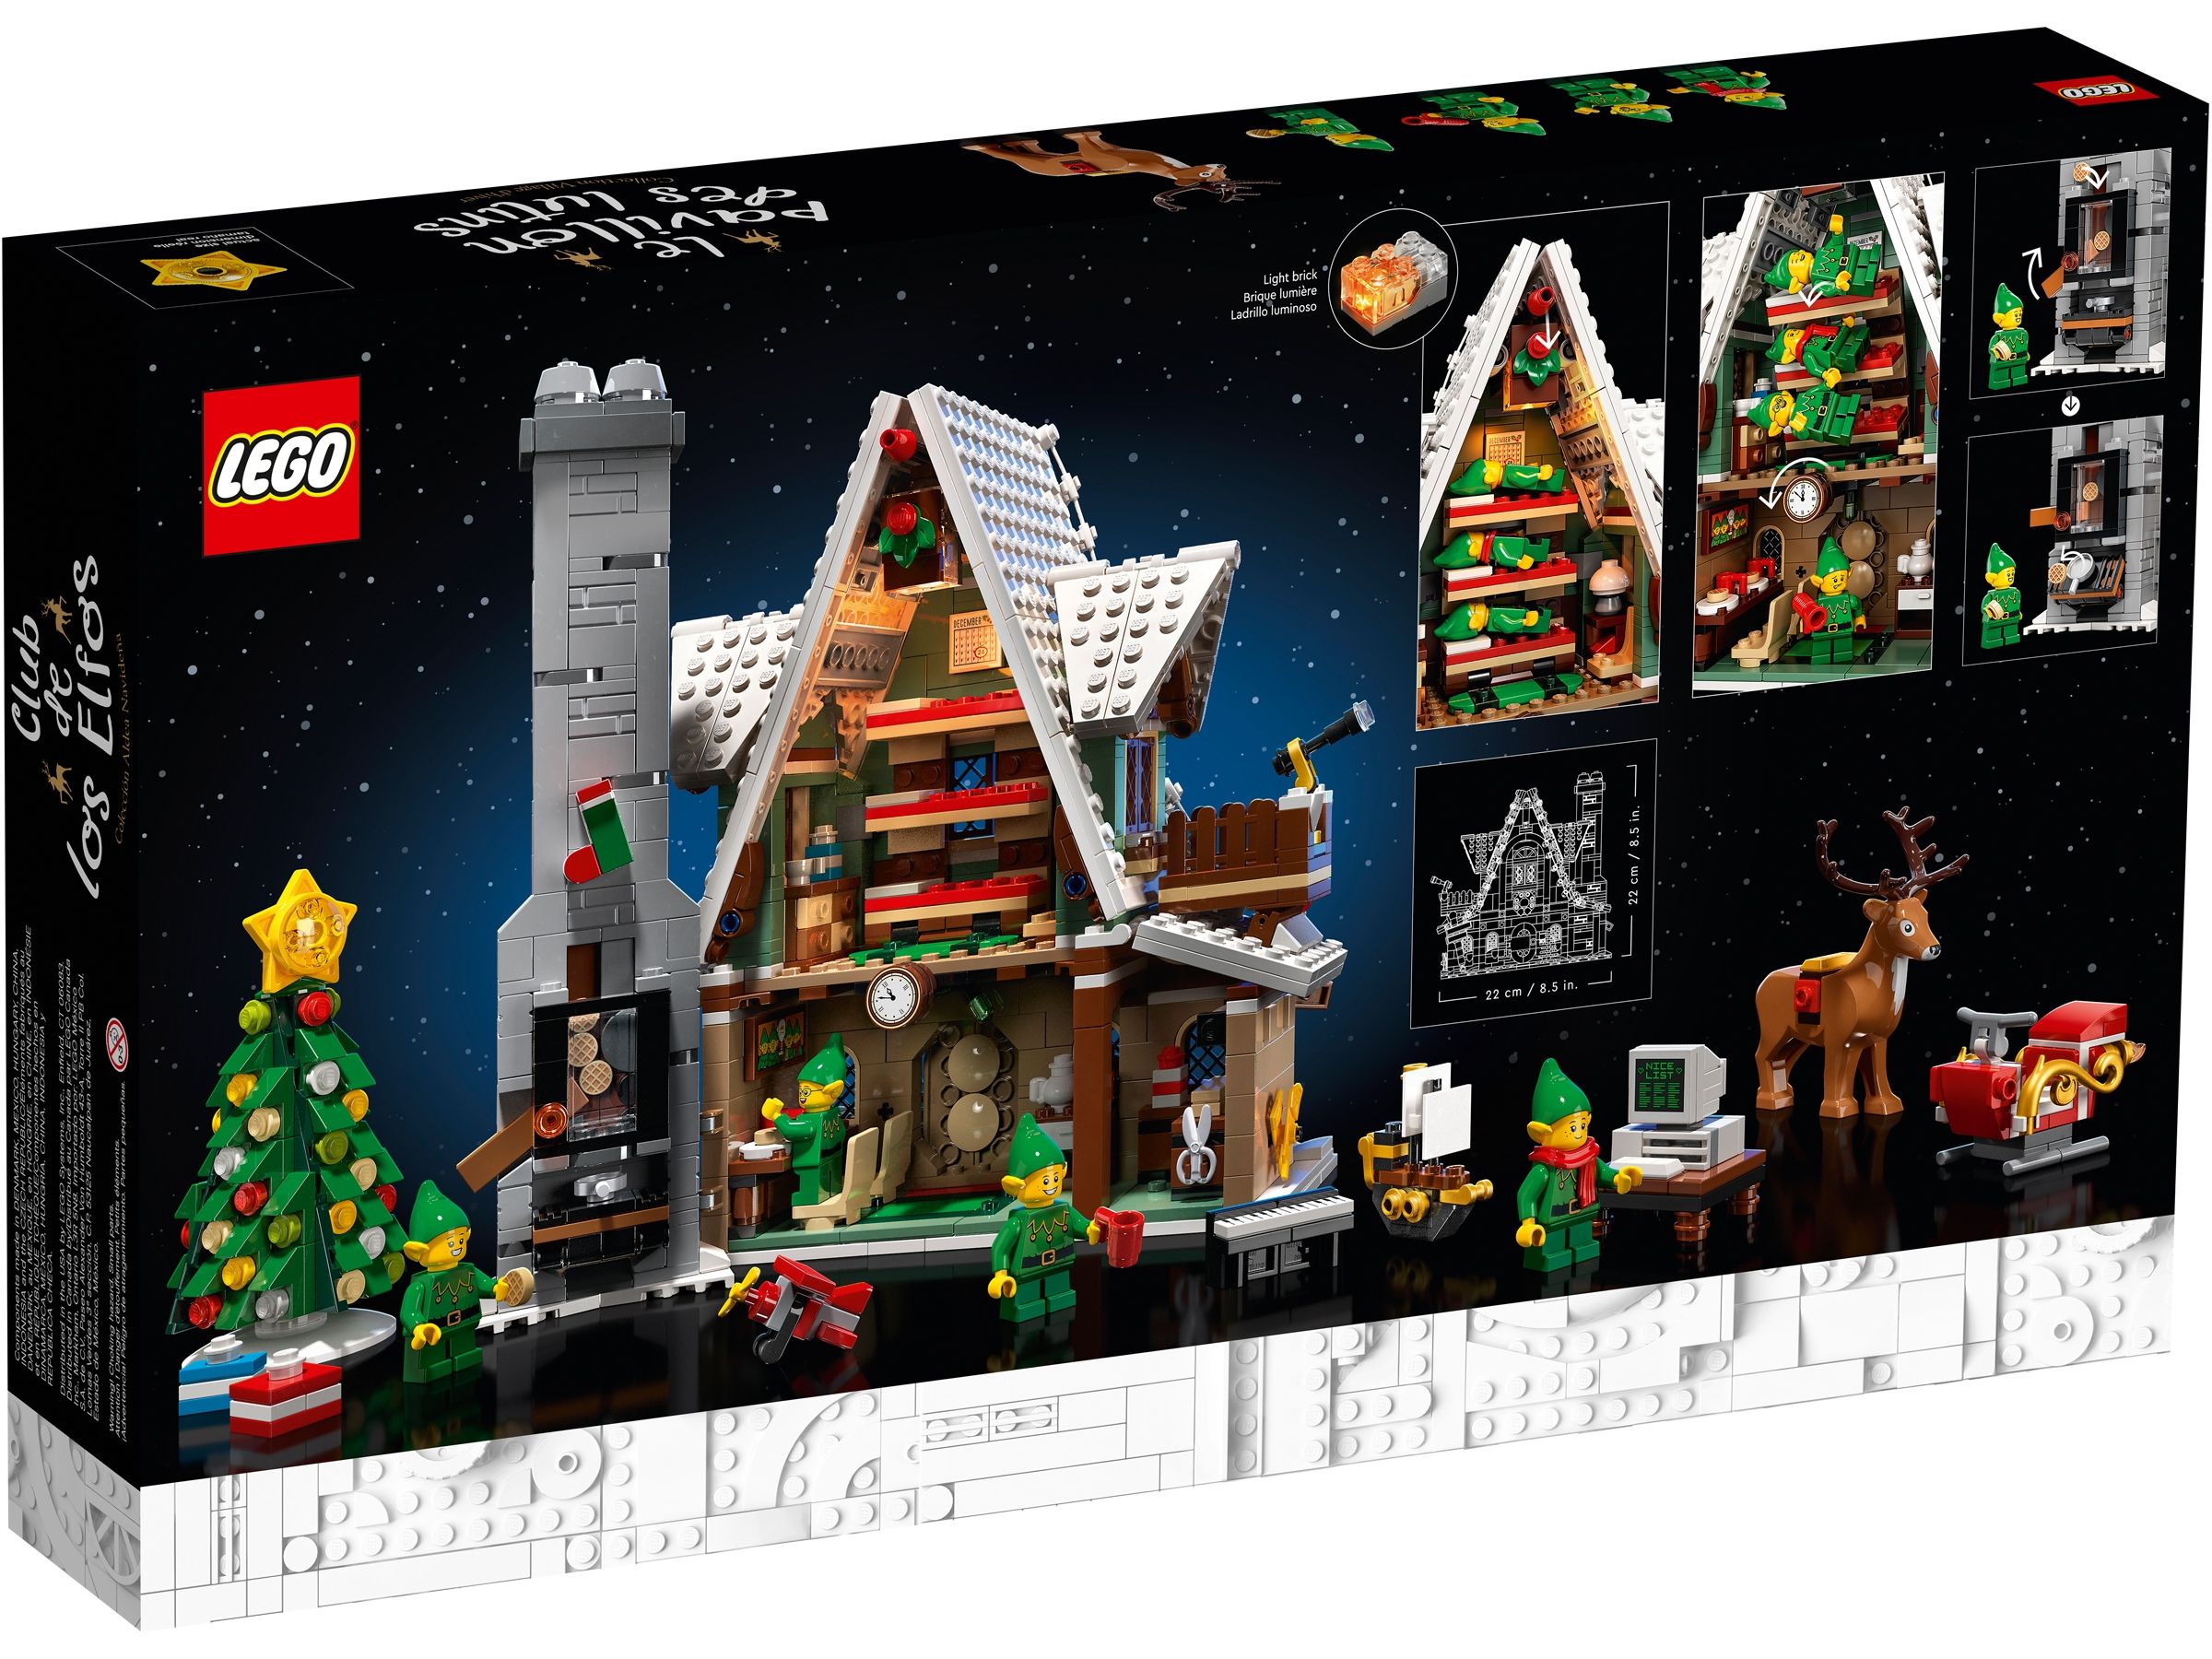 LEGO Advanced Models 10275 Winterliches Elfen Klubhaus LEGO_10275_Box5_v39_2400.jpg